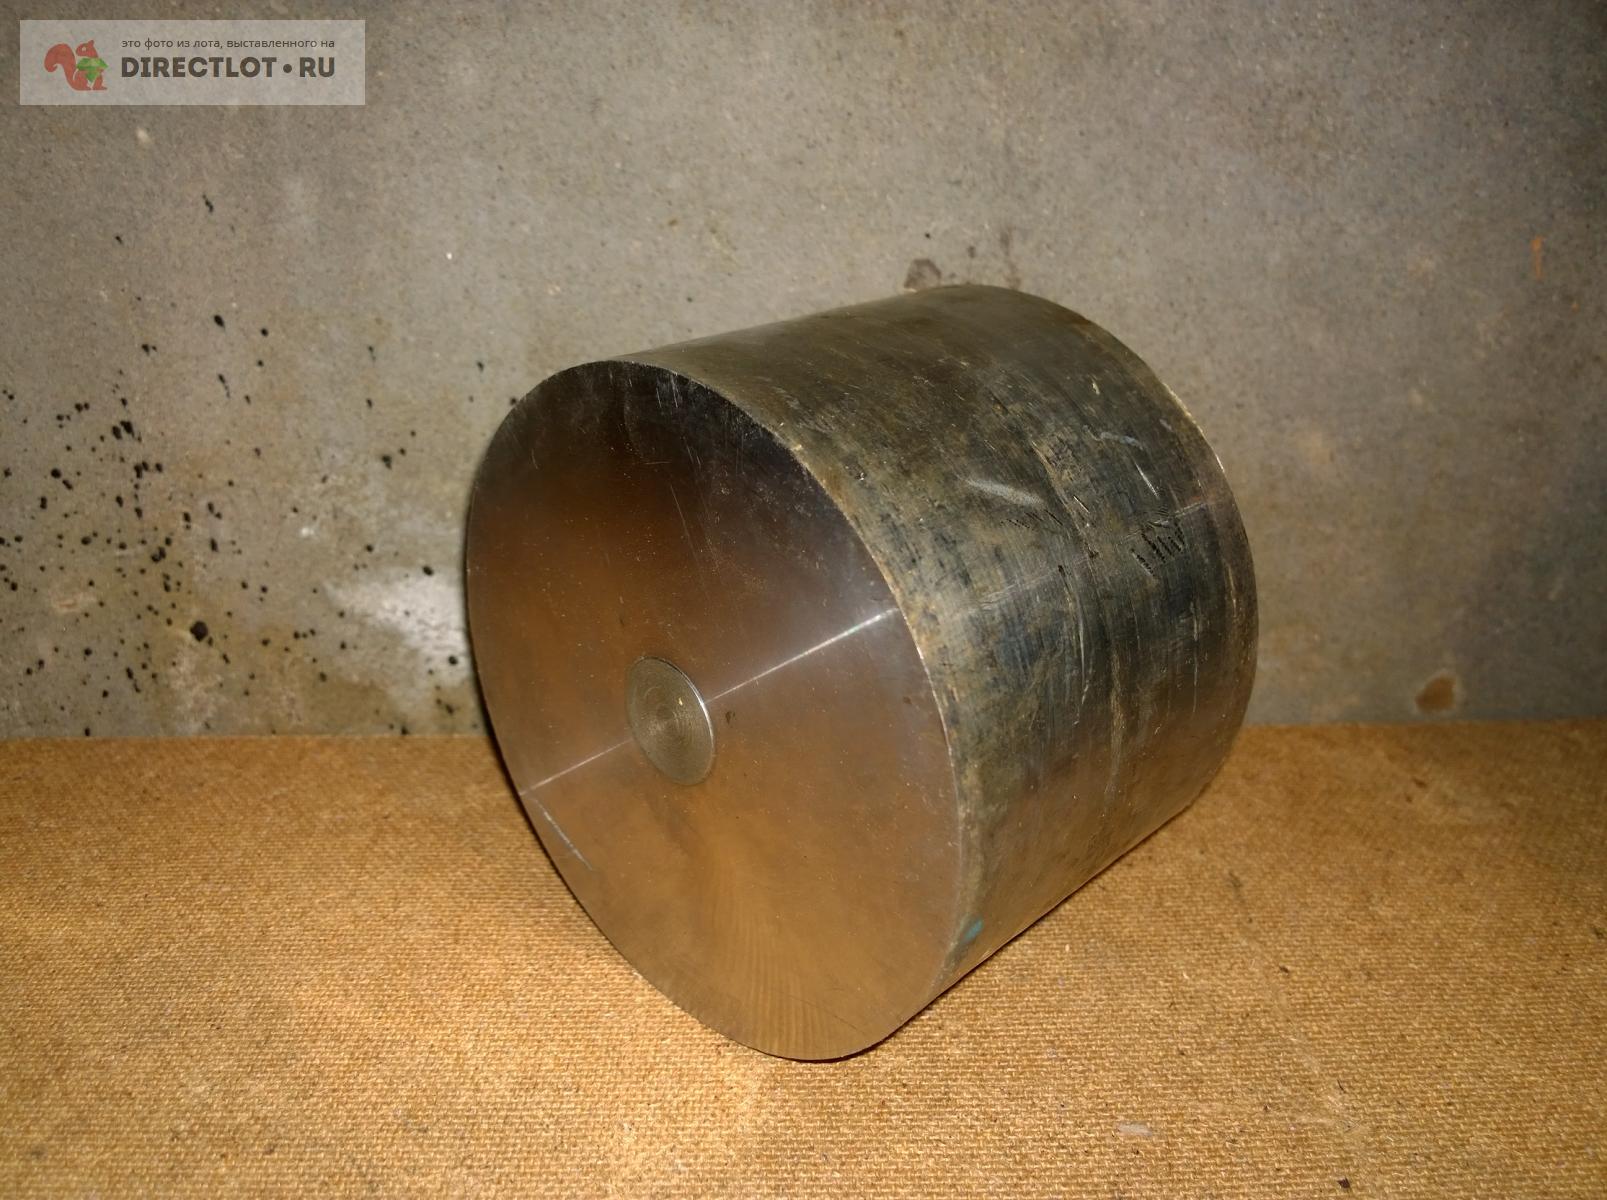 кругляк стальной Ф134 h94 (диаметр 134 заготовка круглая нержавейка .